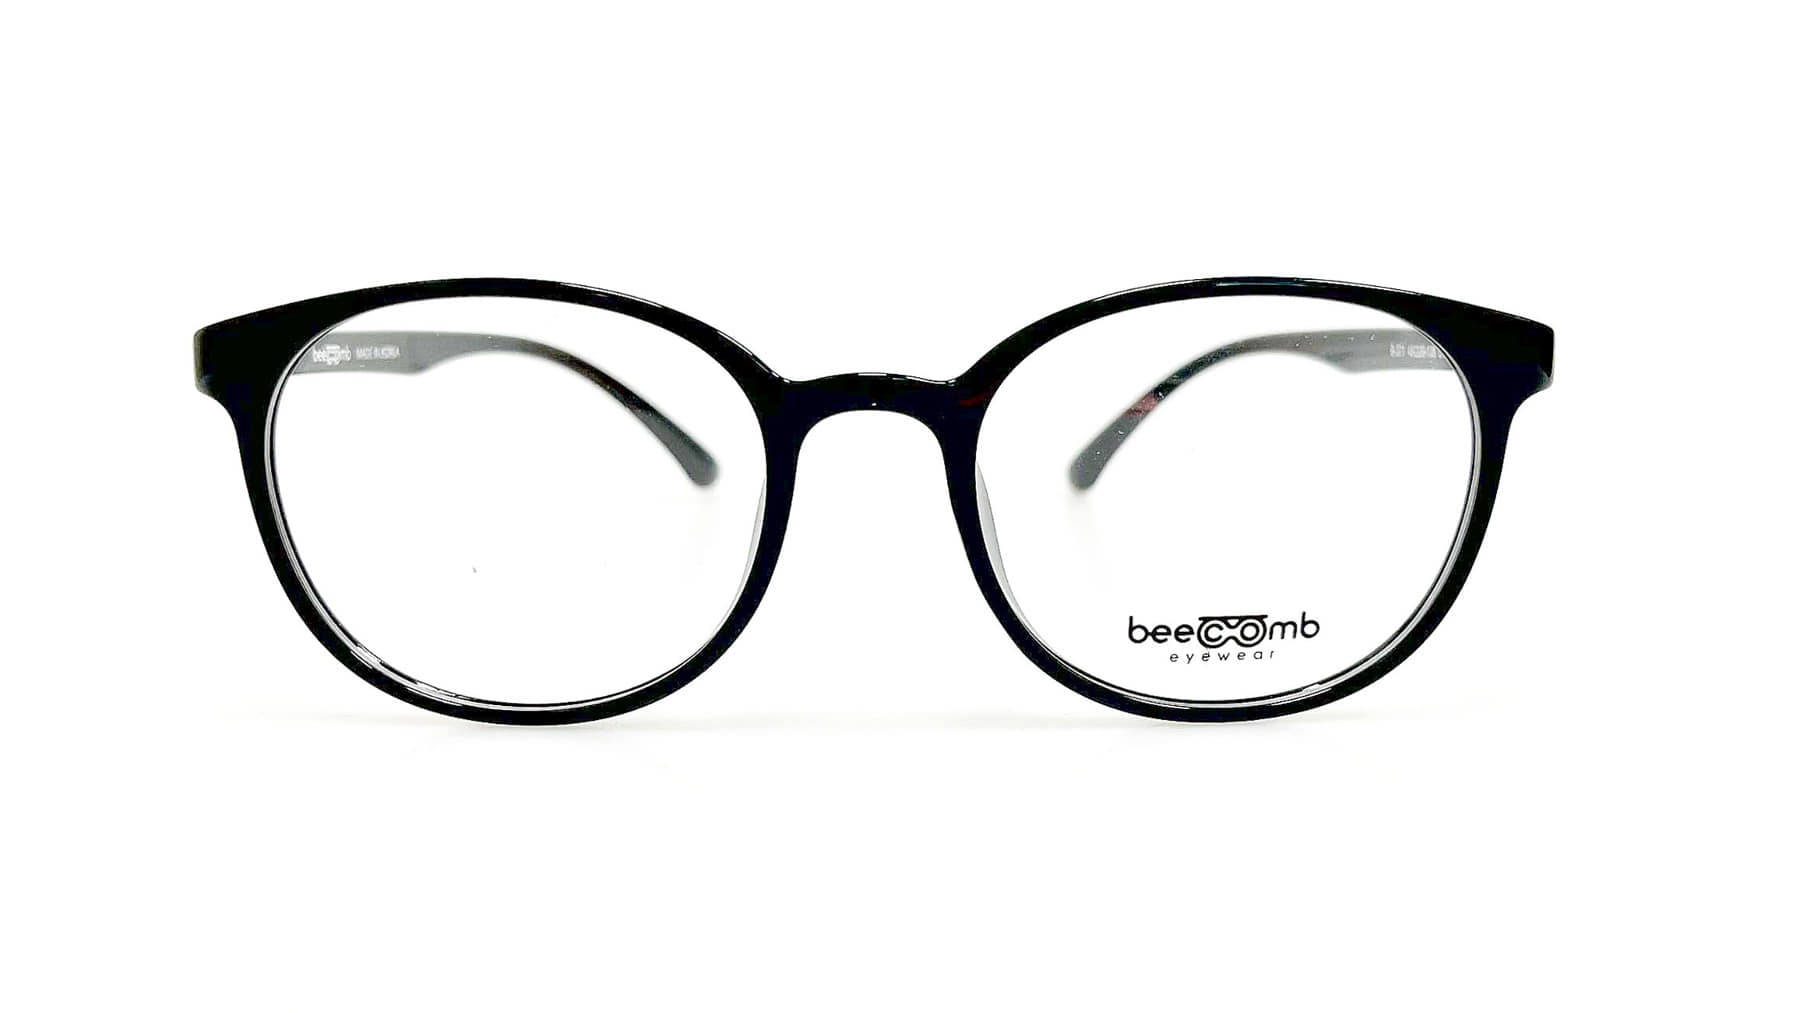 B-371, Korean glasses, sunglasses, eyeglasses, glasses